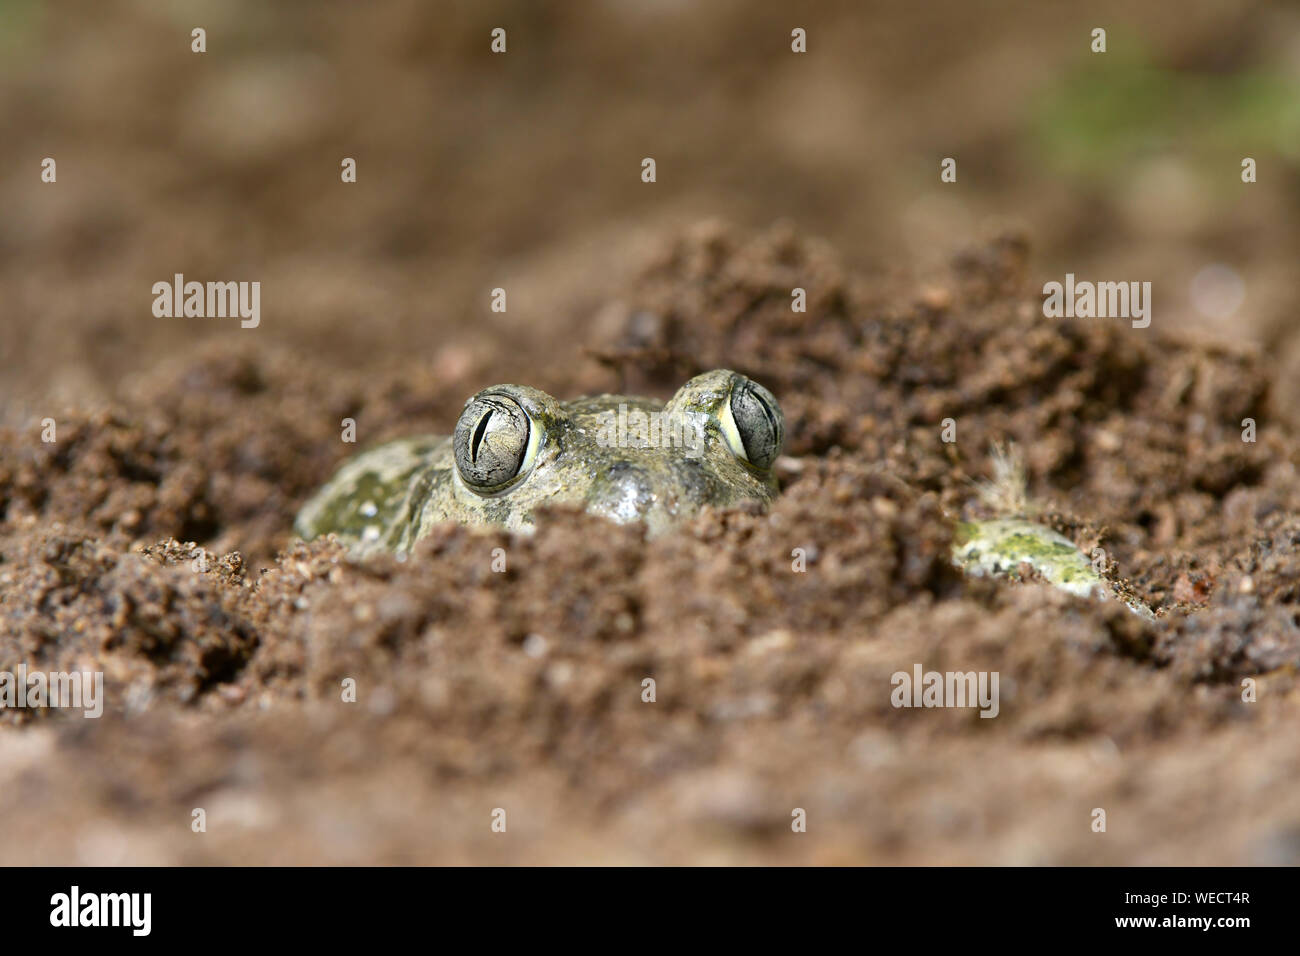 Europäischen Knoblauchkröte (Pelobates fuscus) versteckt in sandiger Boden mit Kopf und Augen sichtbar, Bulgarien, April Stockfoto